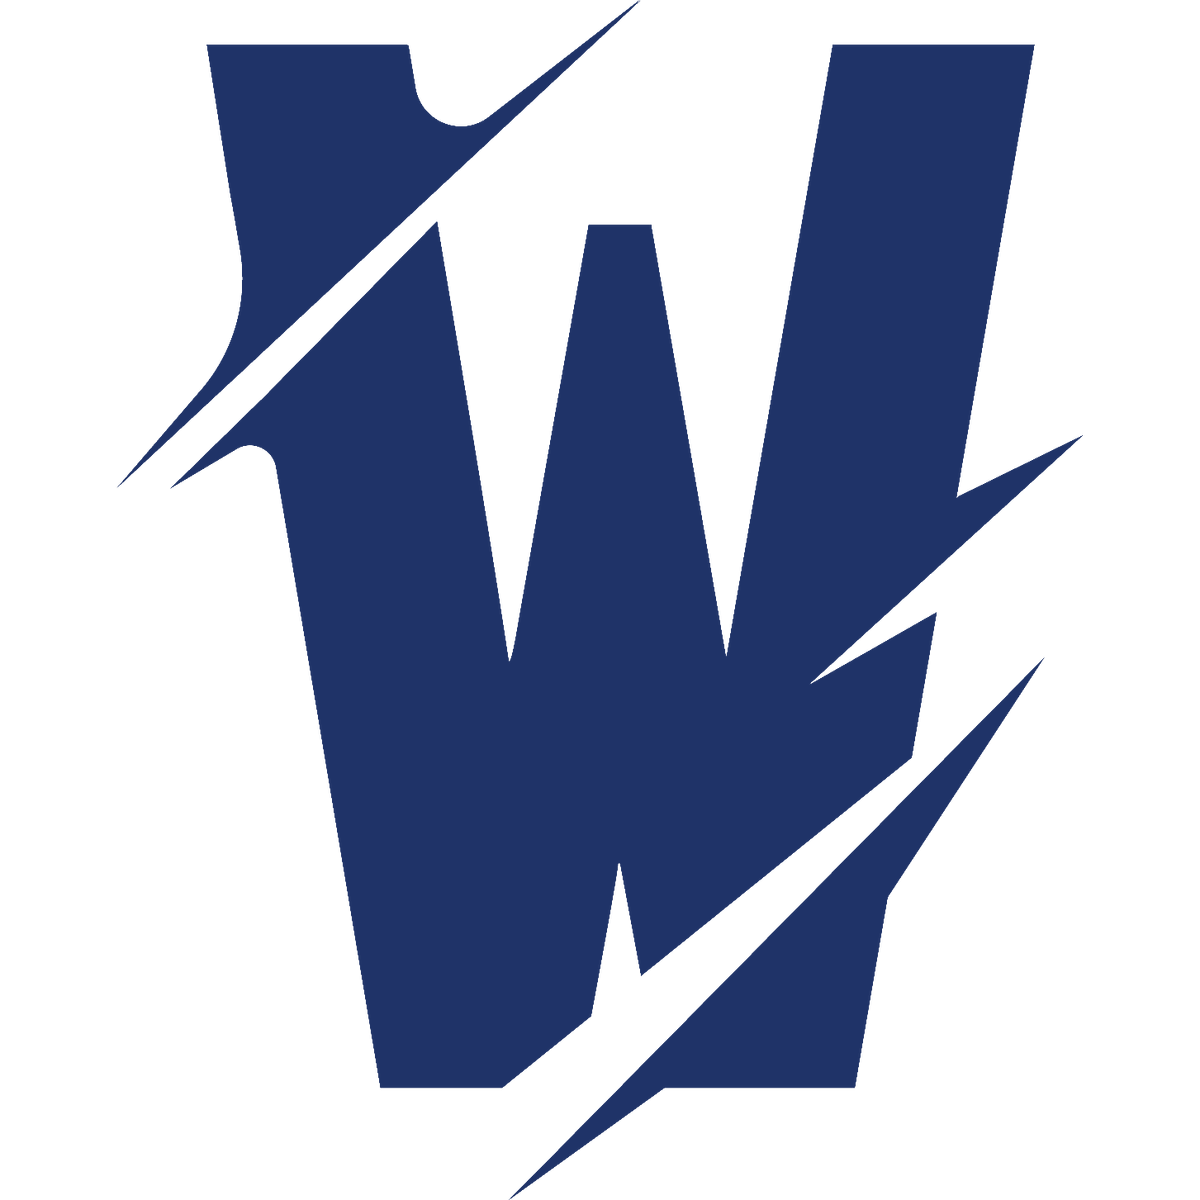 Team Whales Leaguepedia League of Legends Esports Wiki